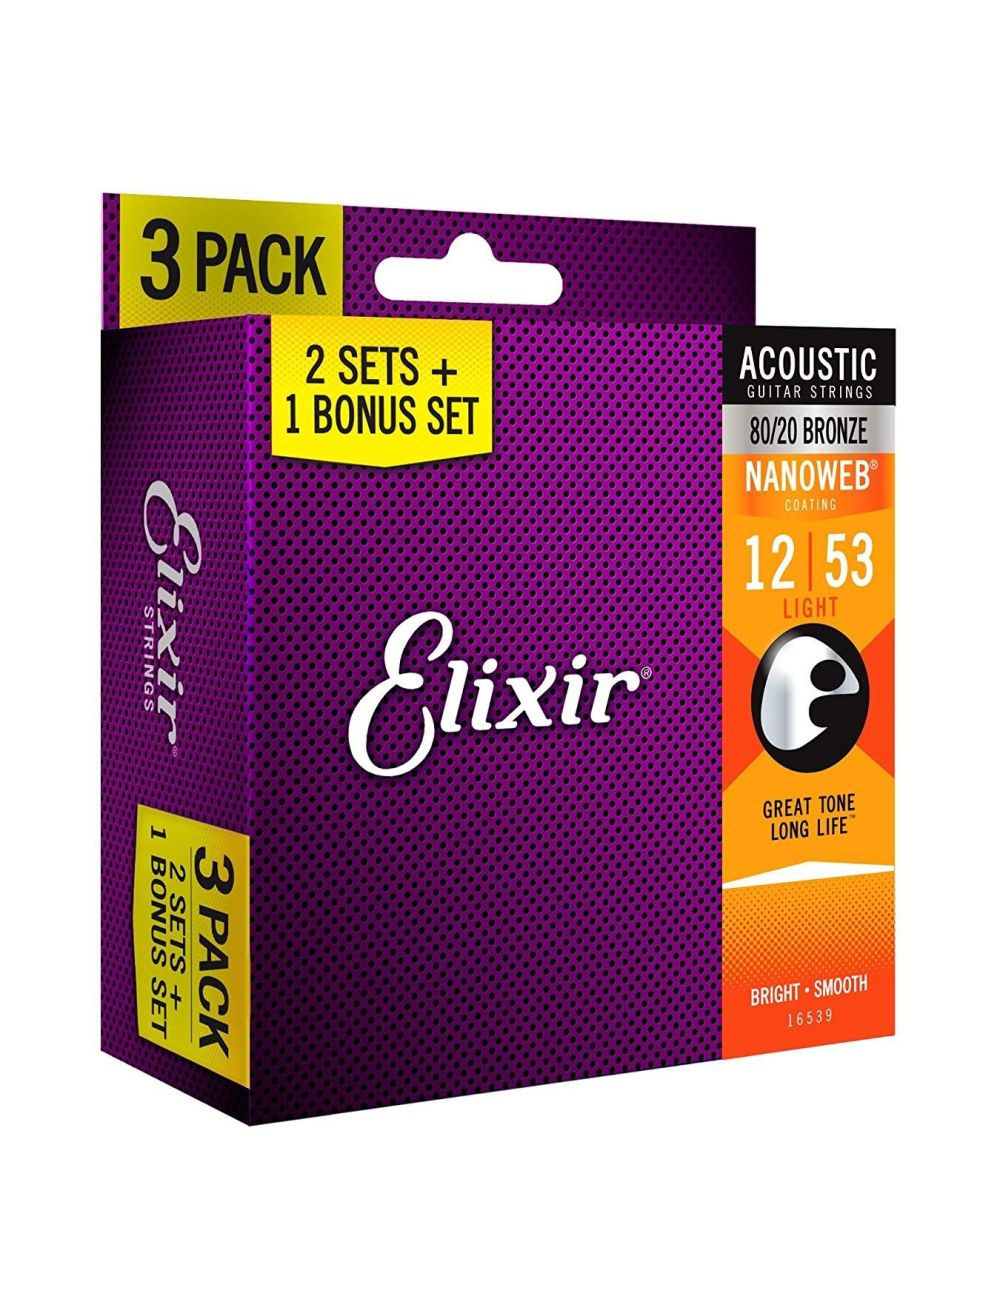 Acoustic guitar strings Elixir 80/20 Bronze 12-53 - Pack of 3 sets 16539 Guitar strings